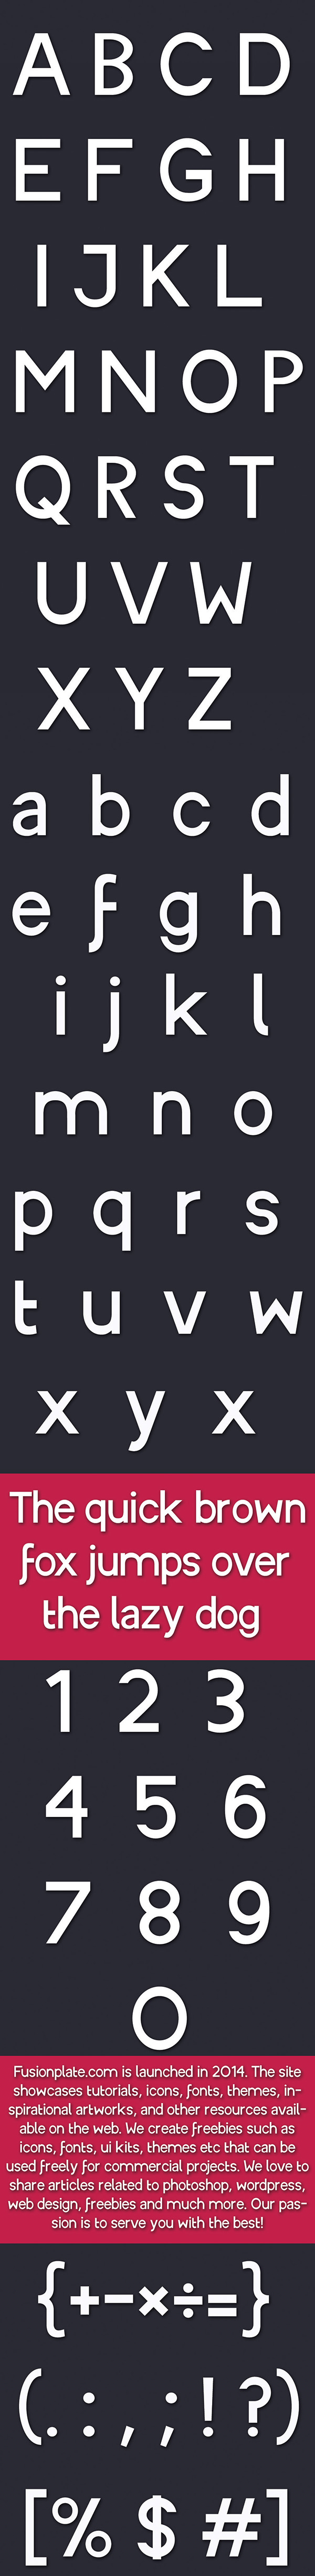 Payful geometric design -ROHIO Free Typeface